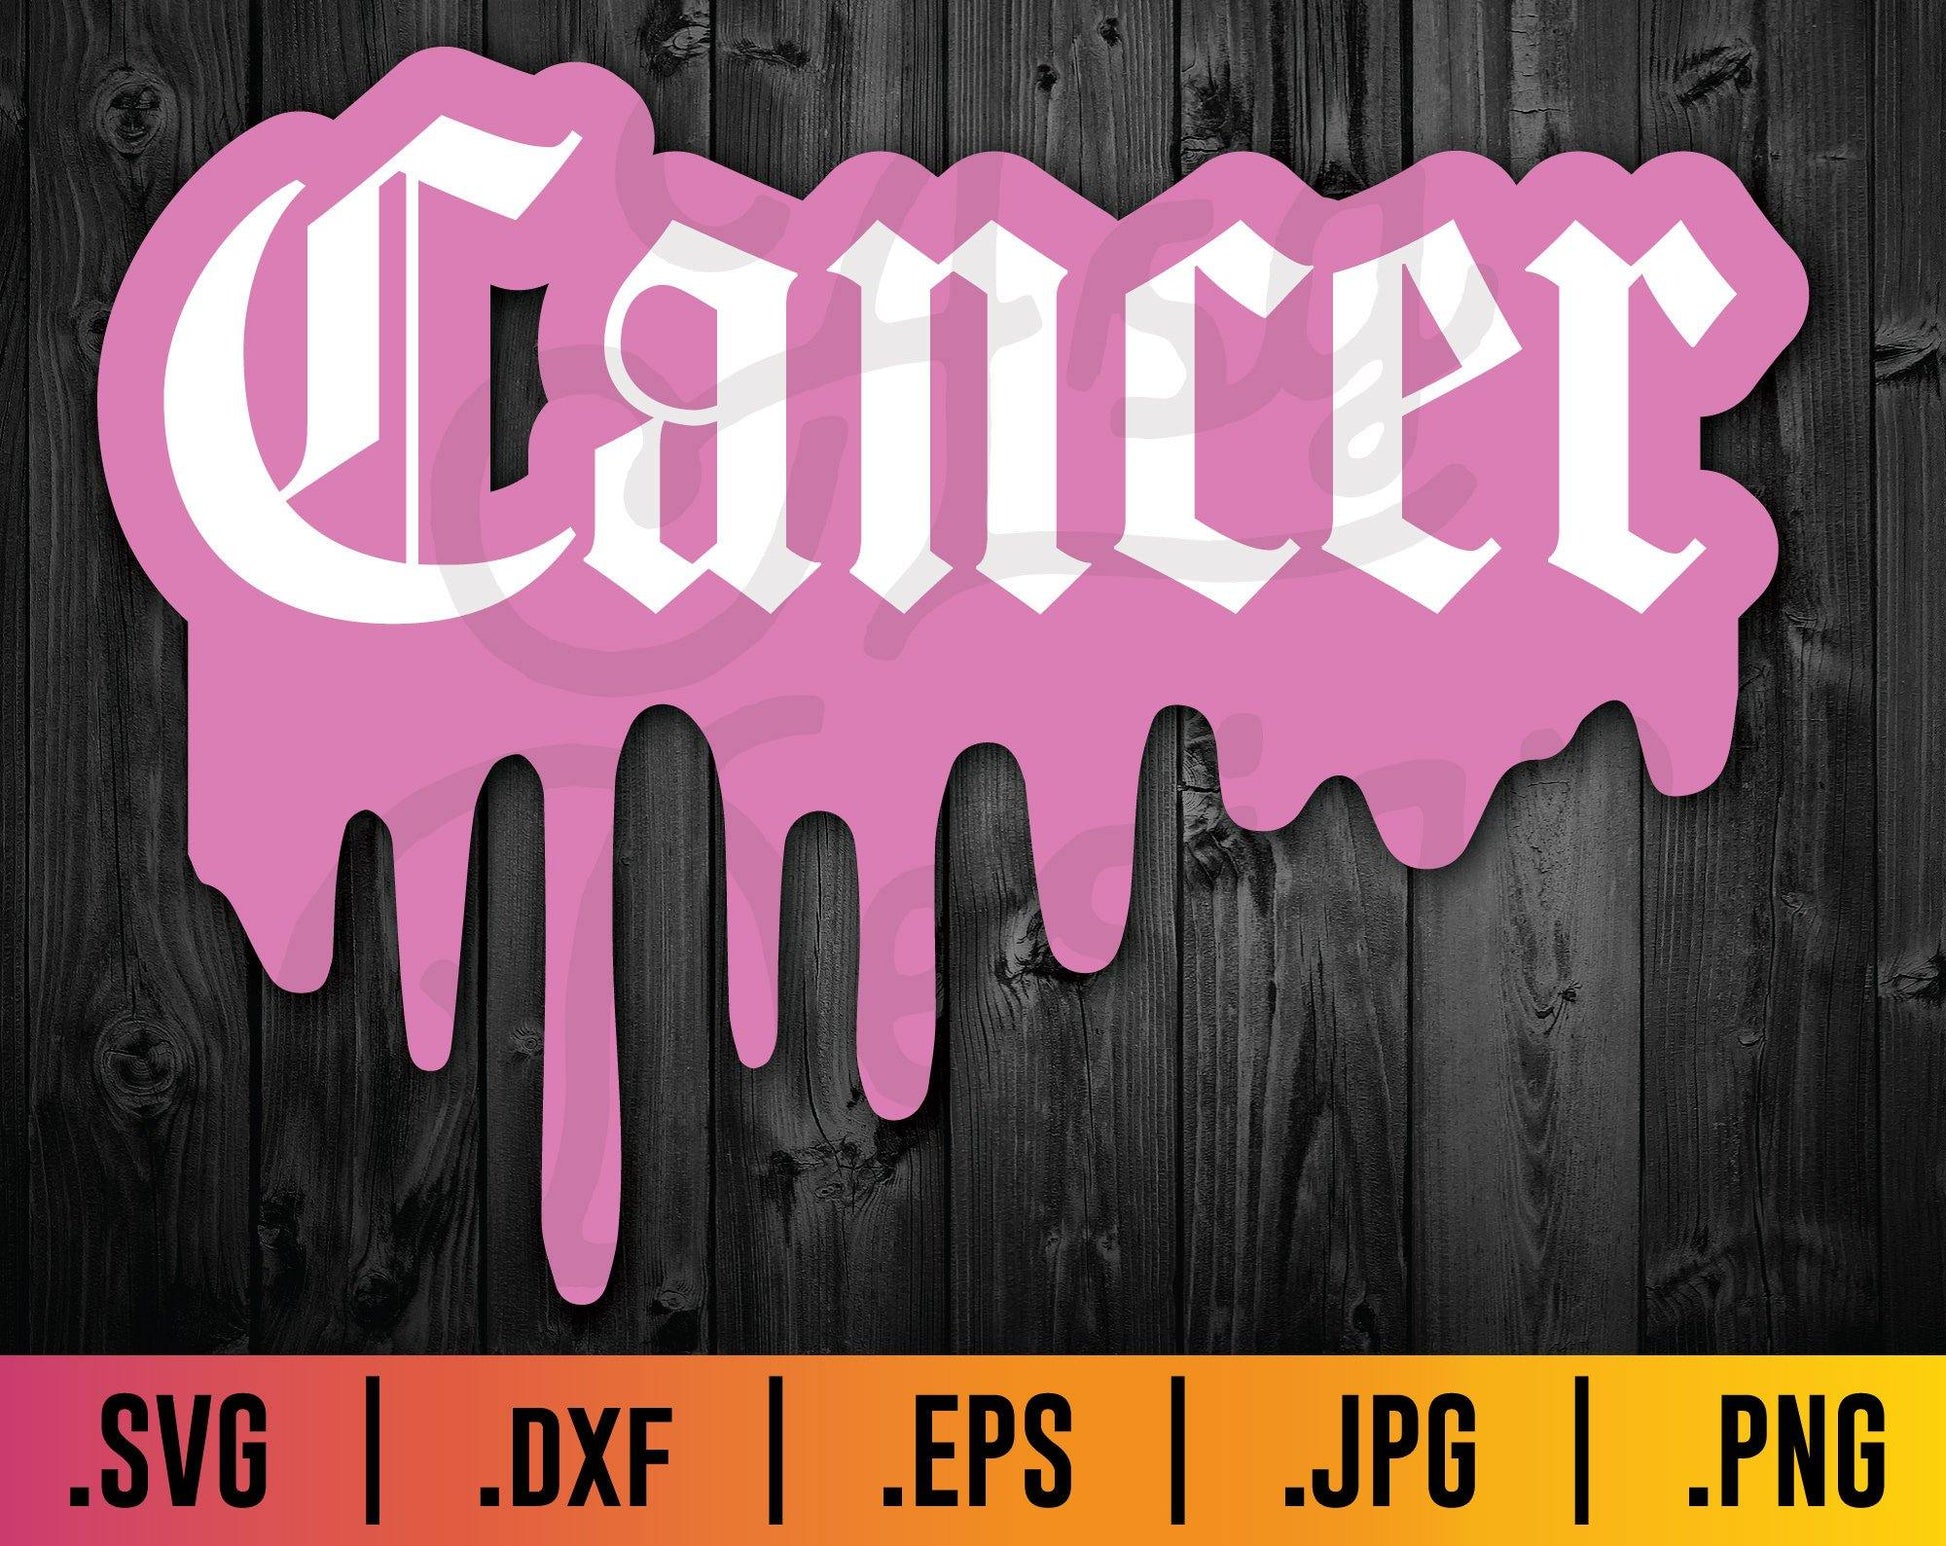 Cancer Old English Drip Zodiac SVG - TheCraftyDrunkCo